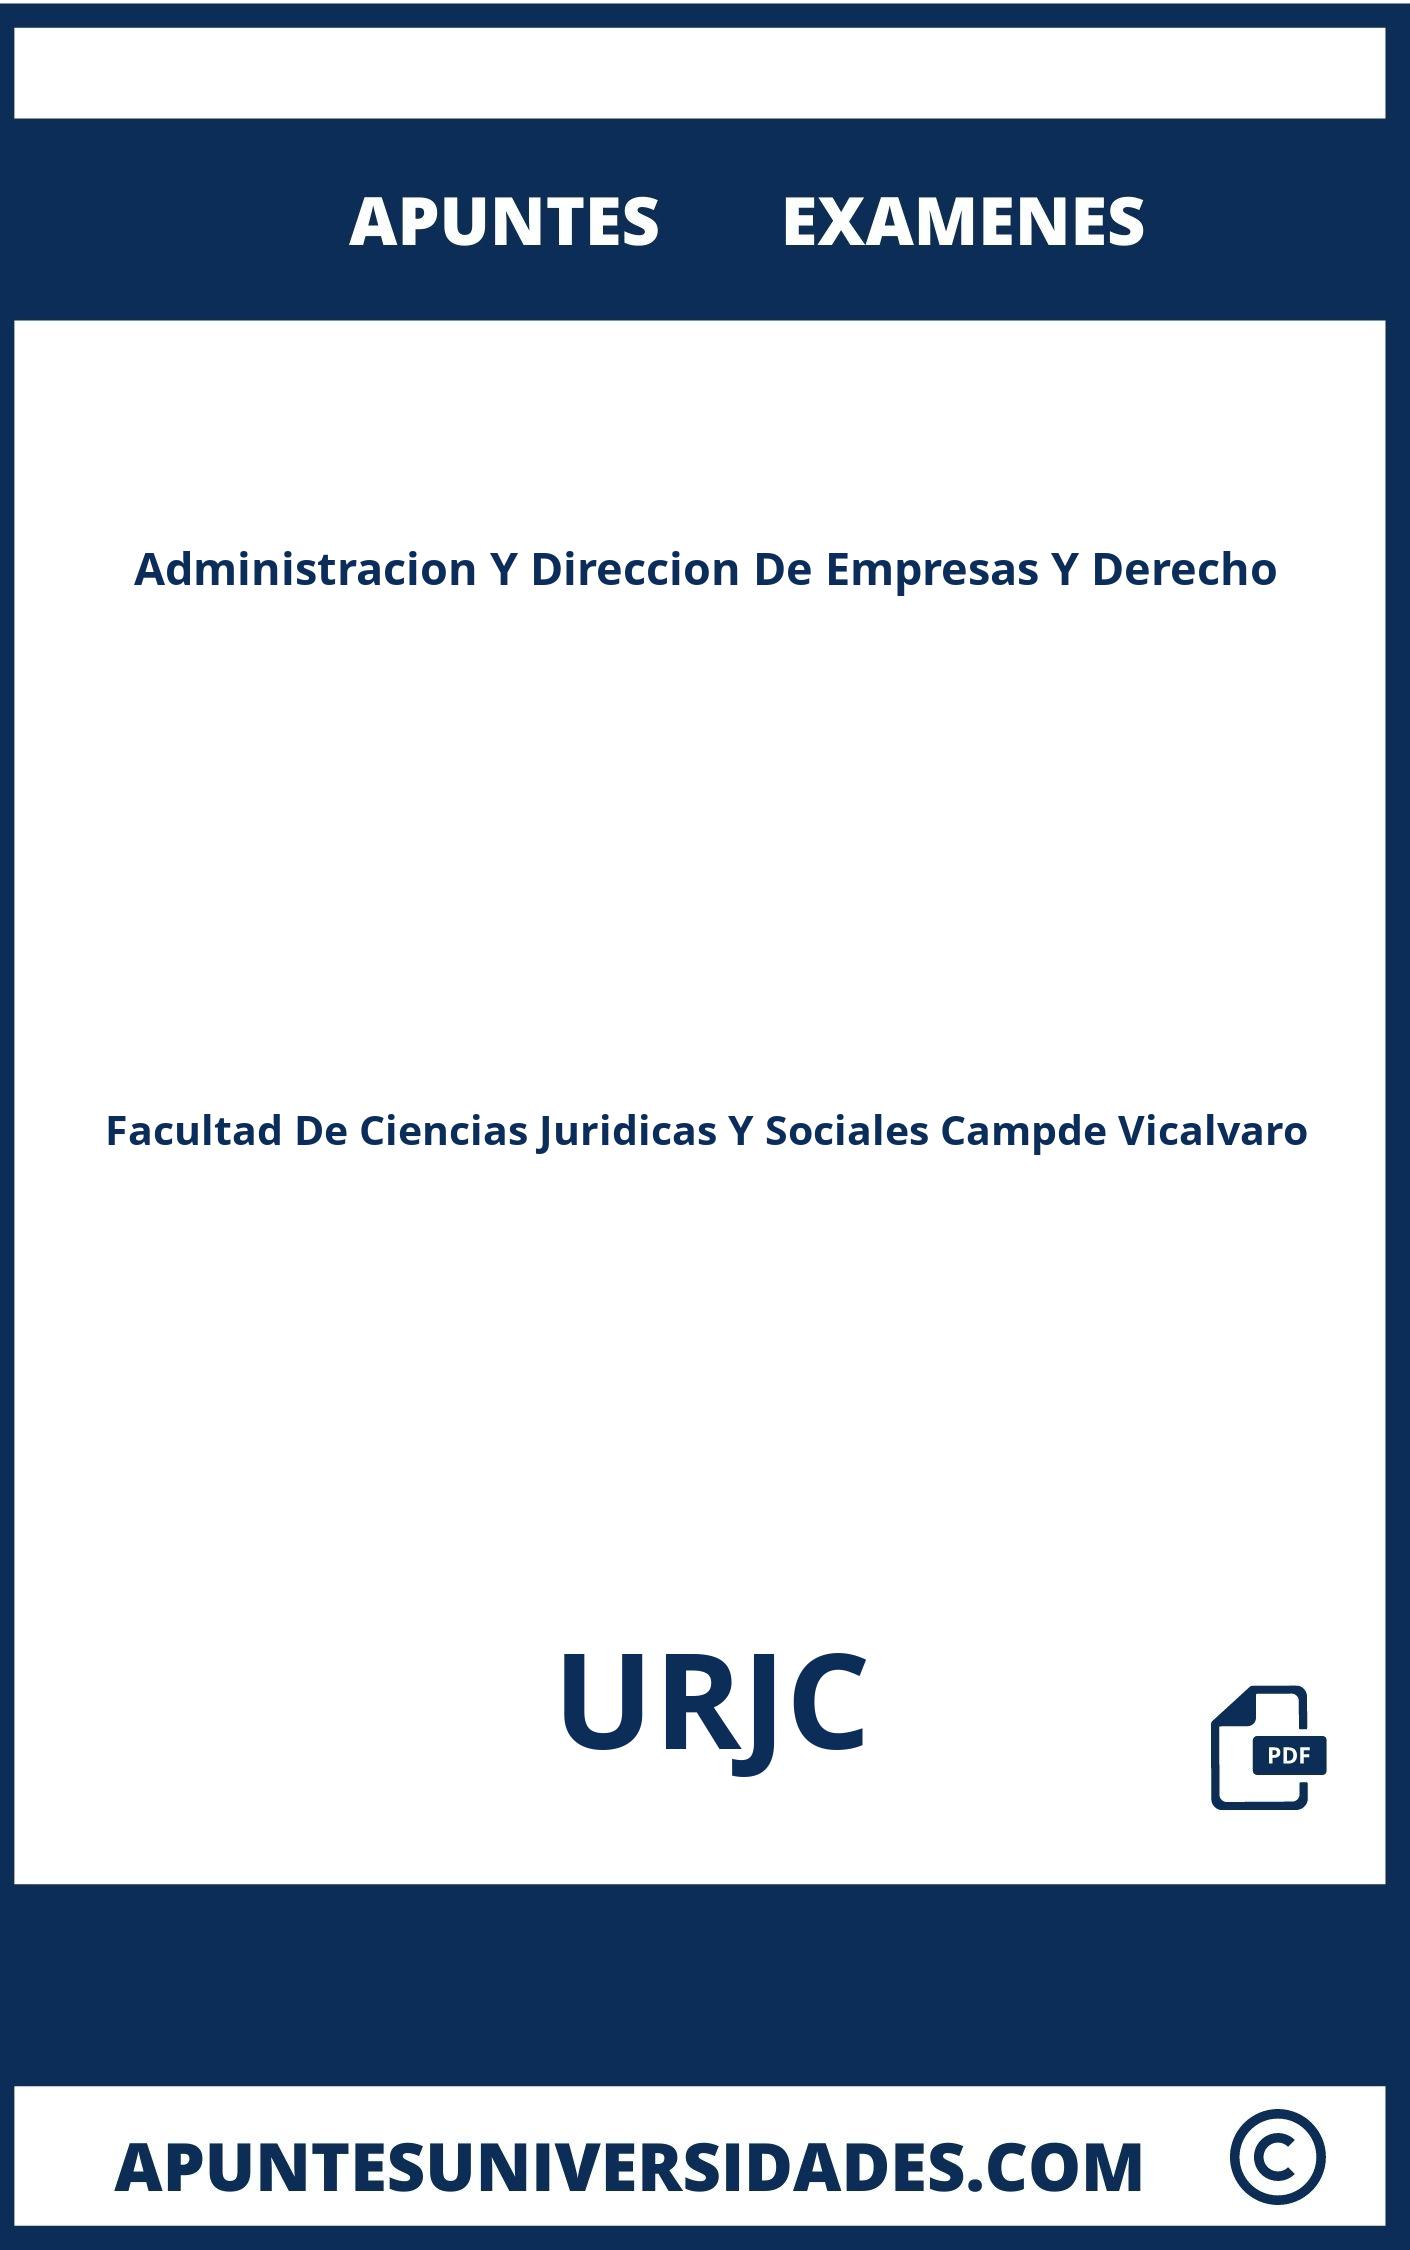 Apuntes y Examenes Administracion Y Direccion De Empresas Y Derecho URJC